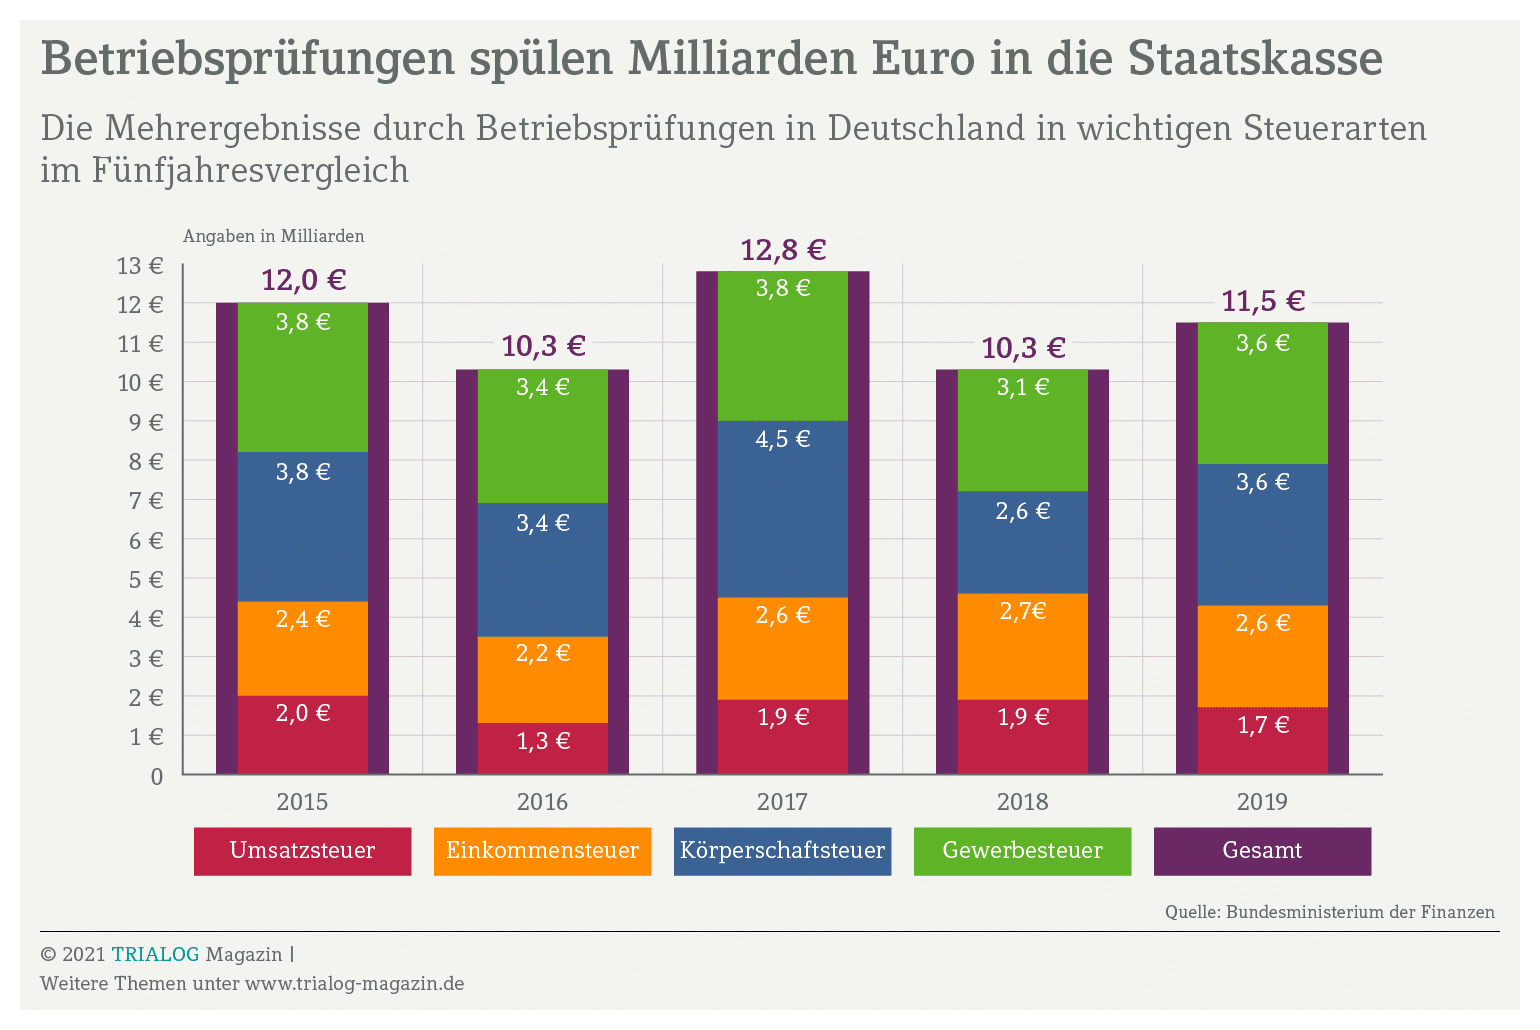 Per Betriebsprüfung generiert der Staat jedes Jahr hohe Einnahmen. Die Grafik zeigt, dass so allein in den vier Haupsteuerarten zwischen 2015 und 2015 jährloch zehn bis 13 Milliarden Euro an nachforderungen anfielen.